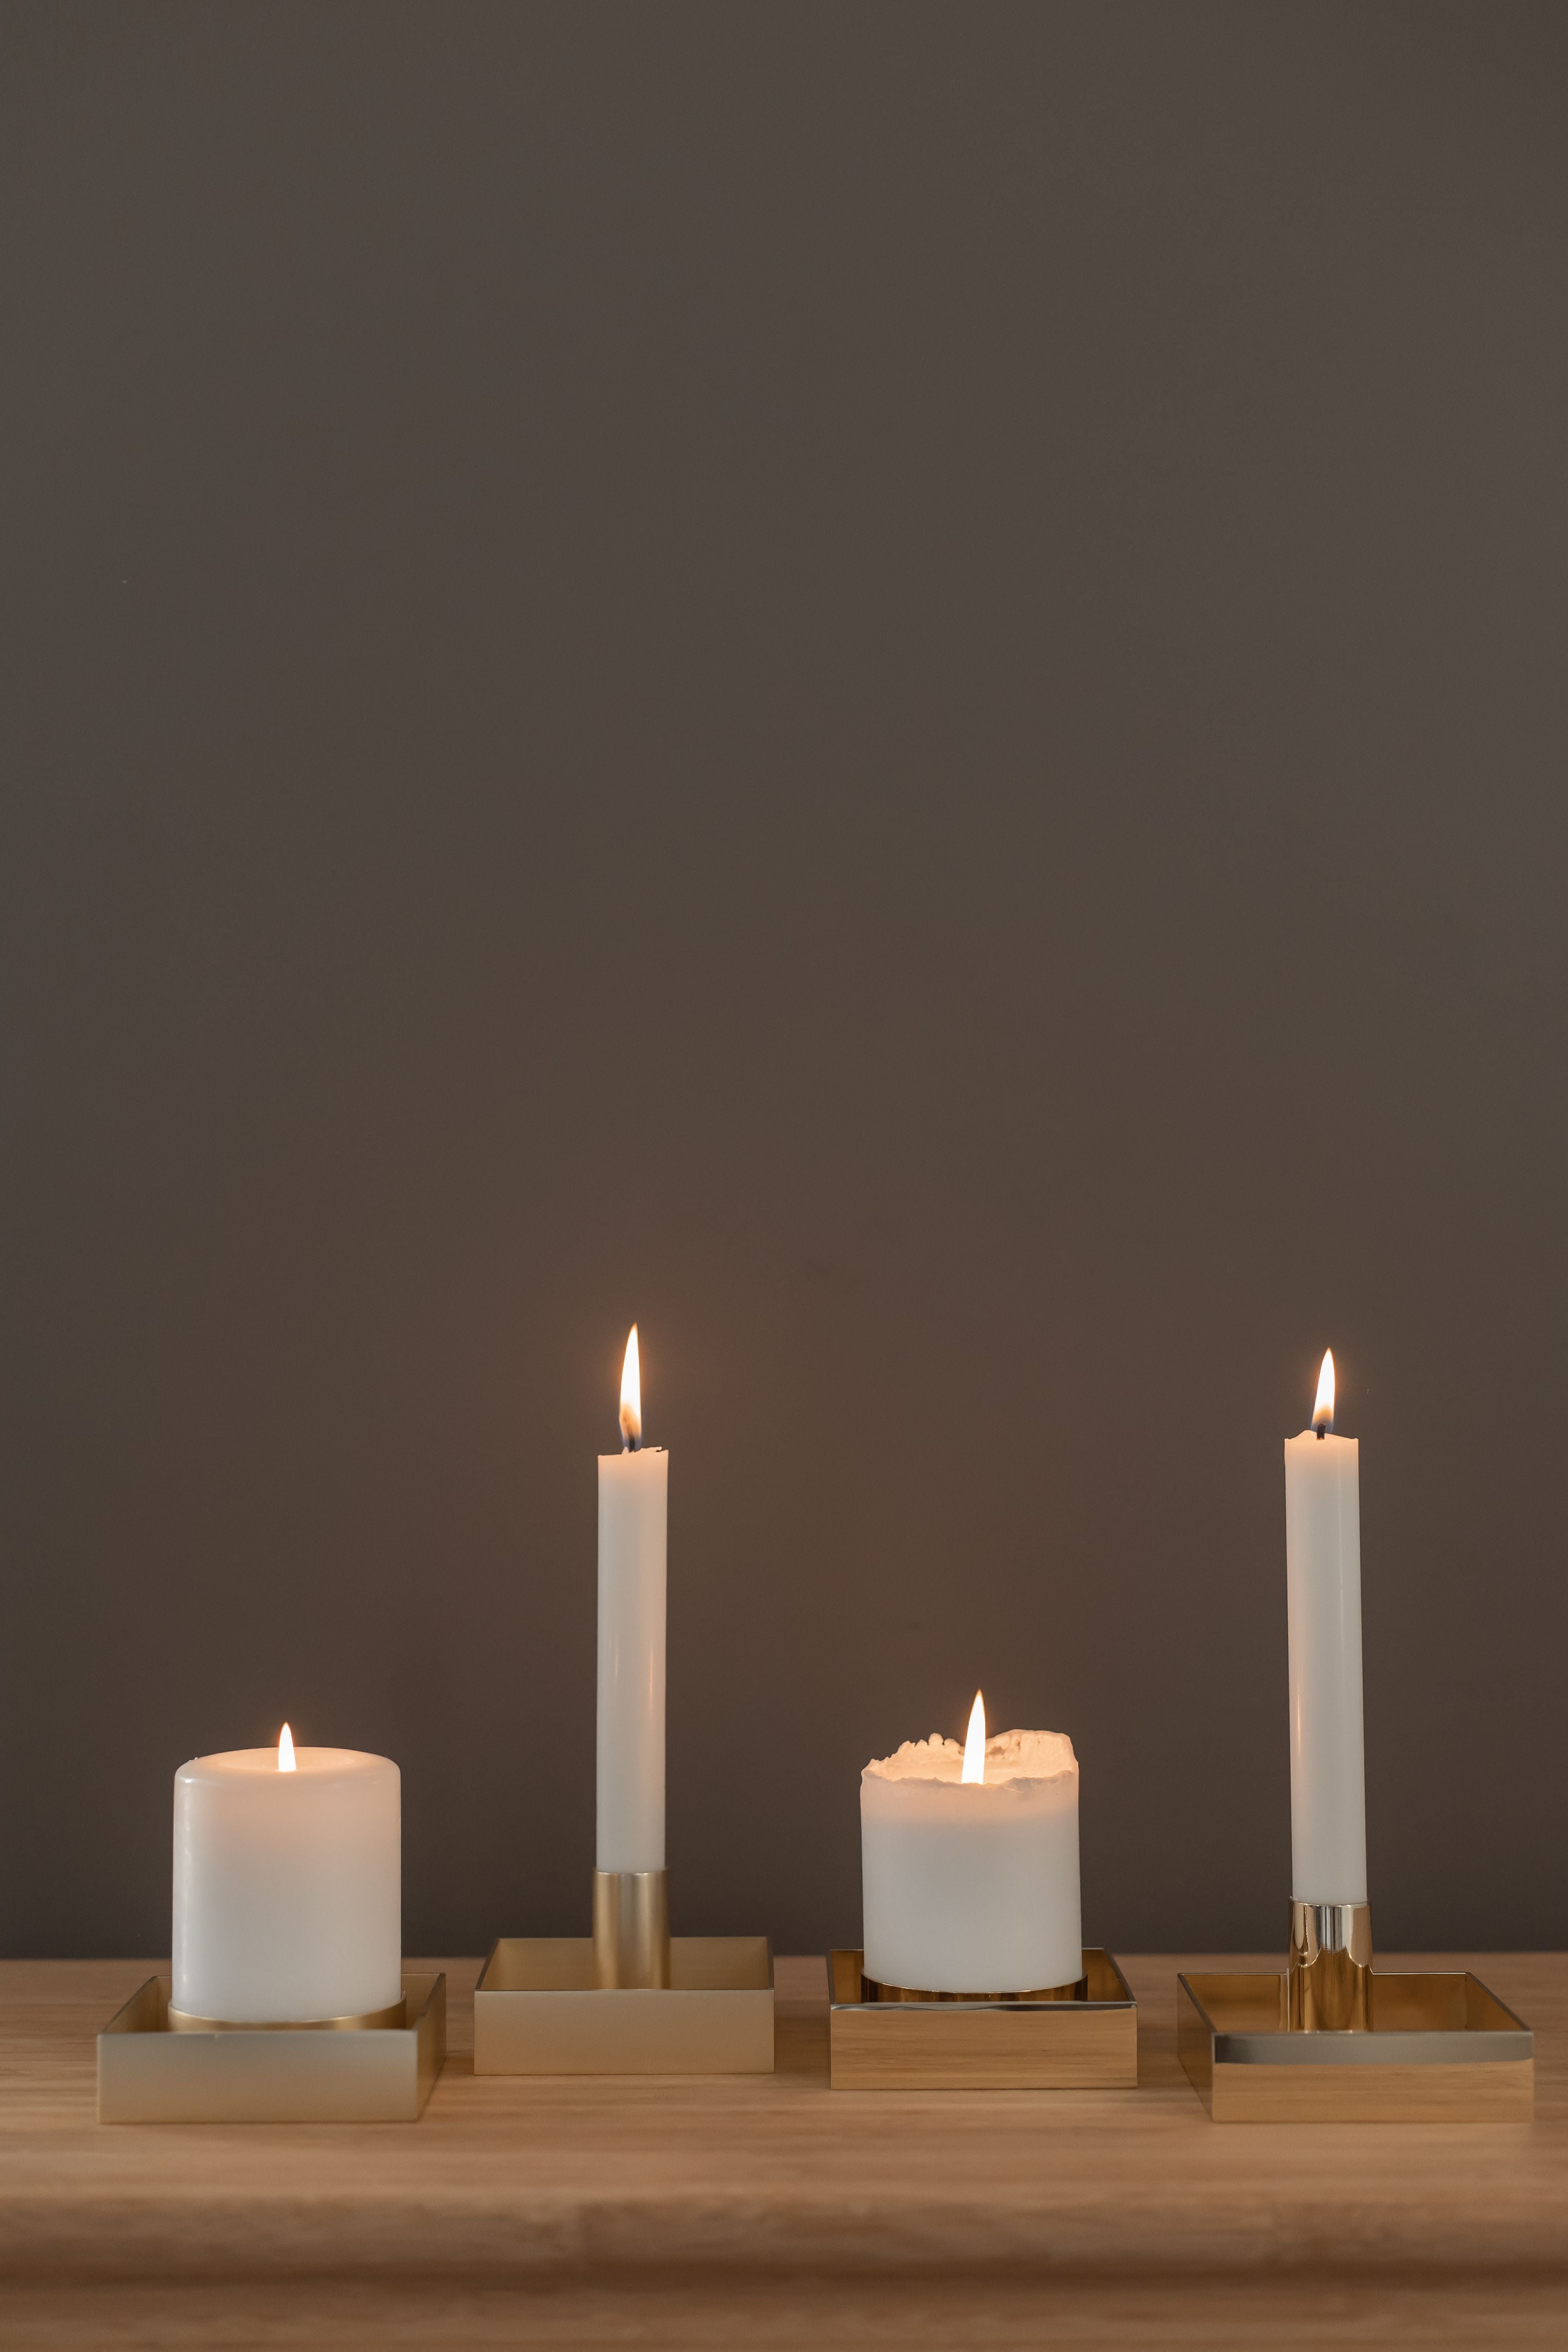 Candlestick a blocchi di bordo vivente malling, in ottone lucido